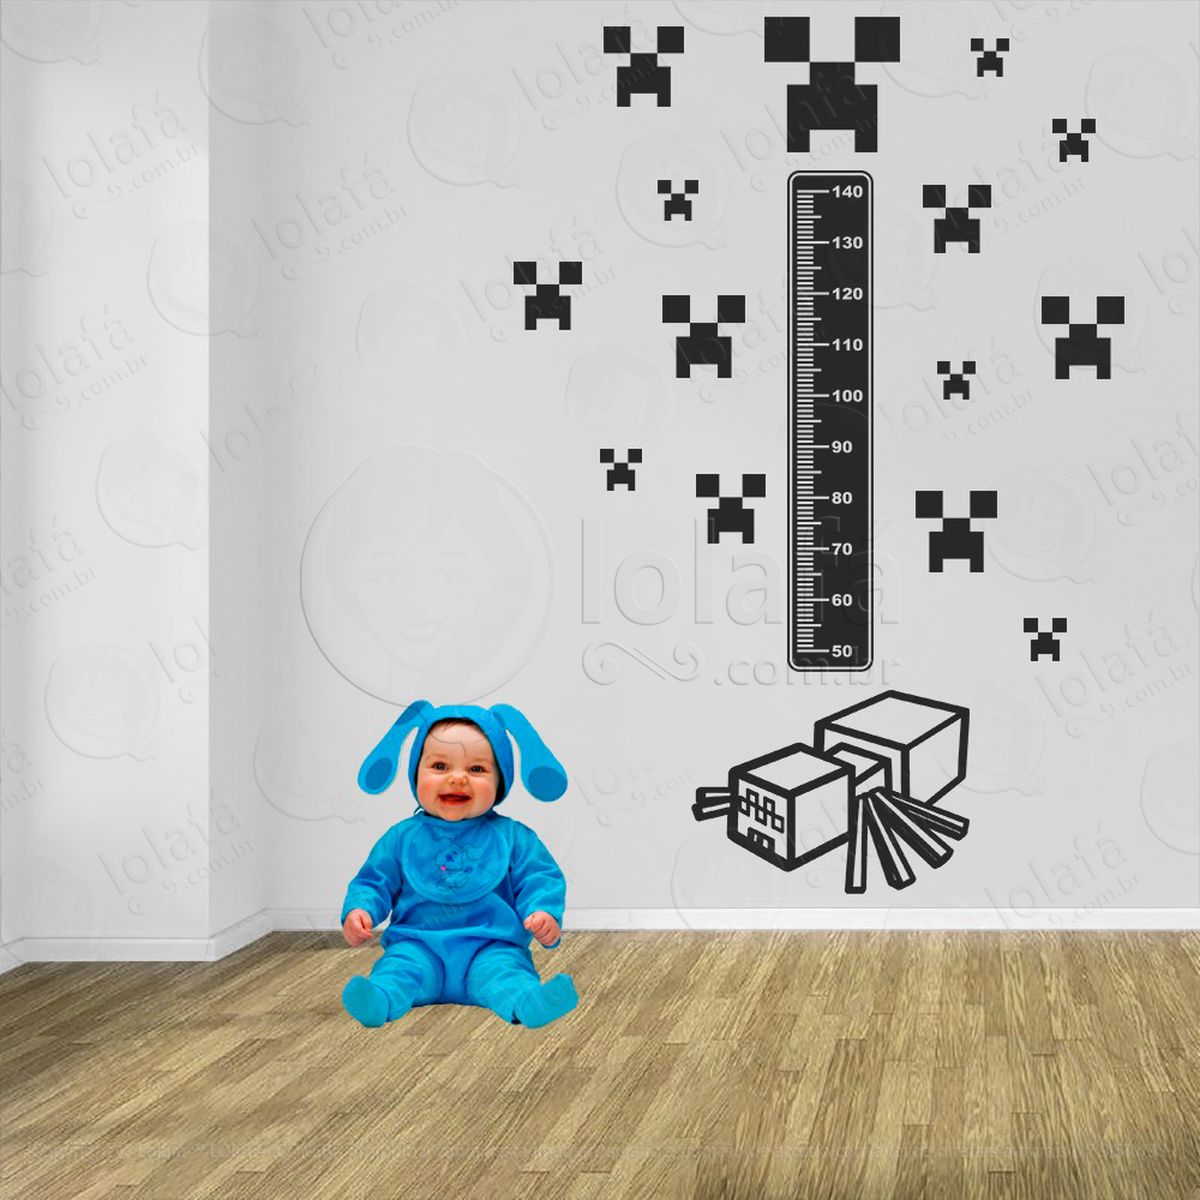 minecraft e minecraft adesivo régua de crescimento infantil, medidor de altura para quarto, porta e parede - mod:740